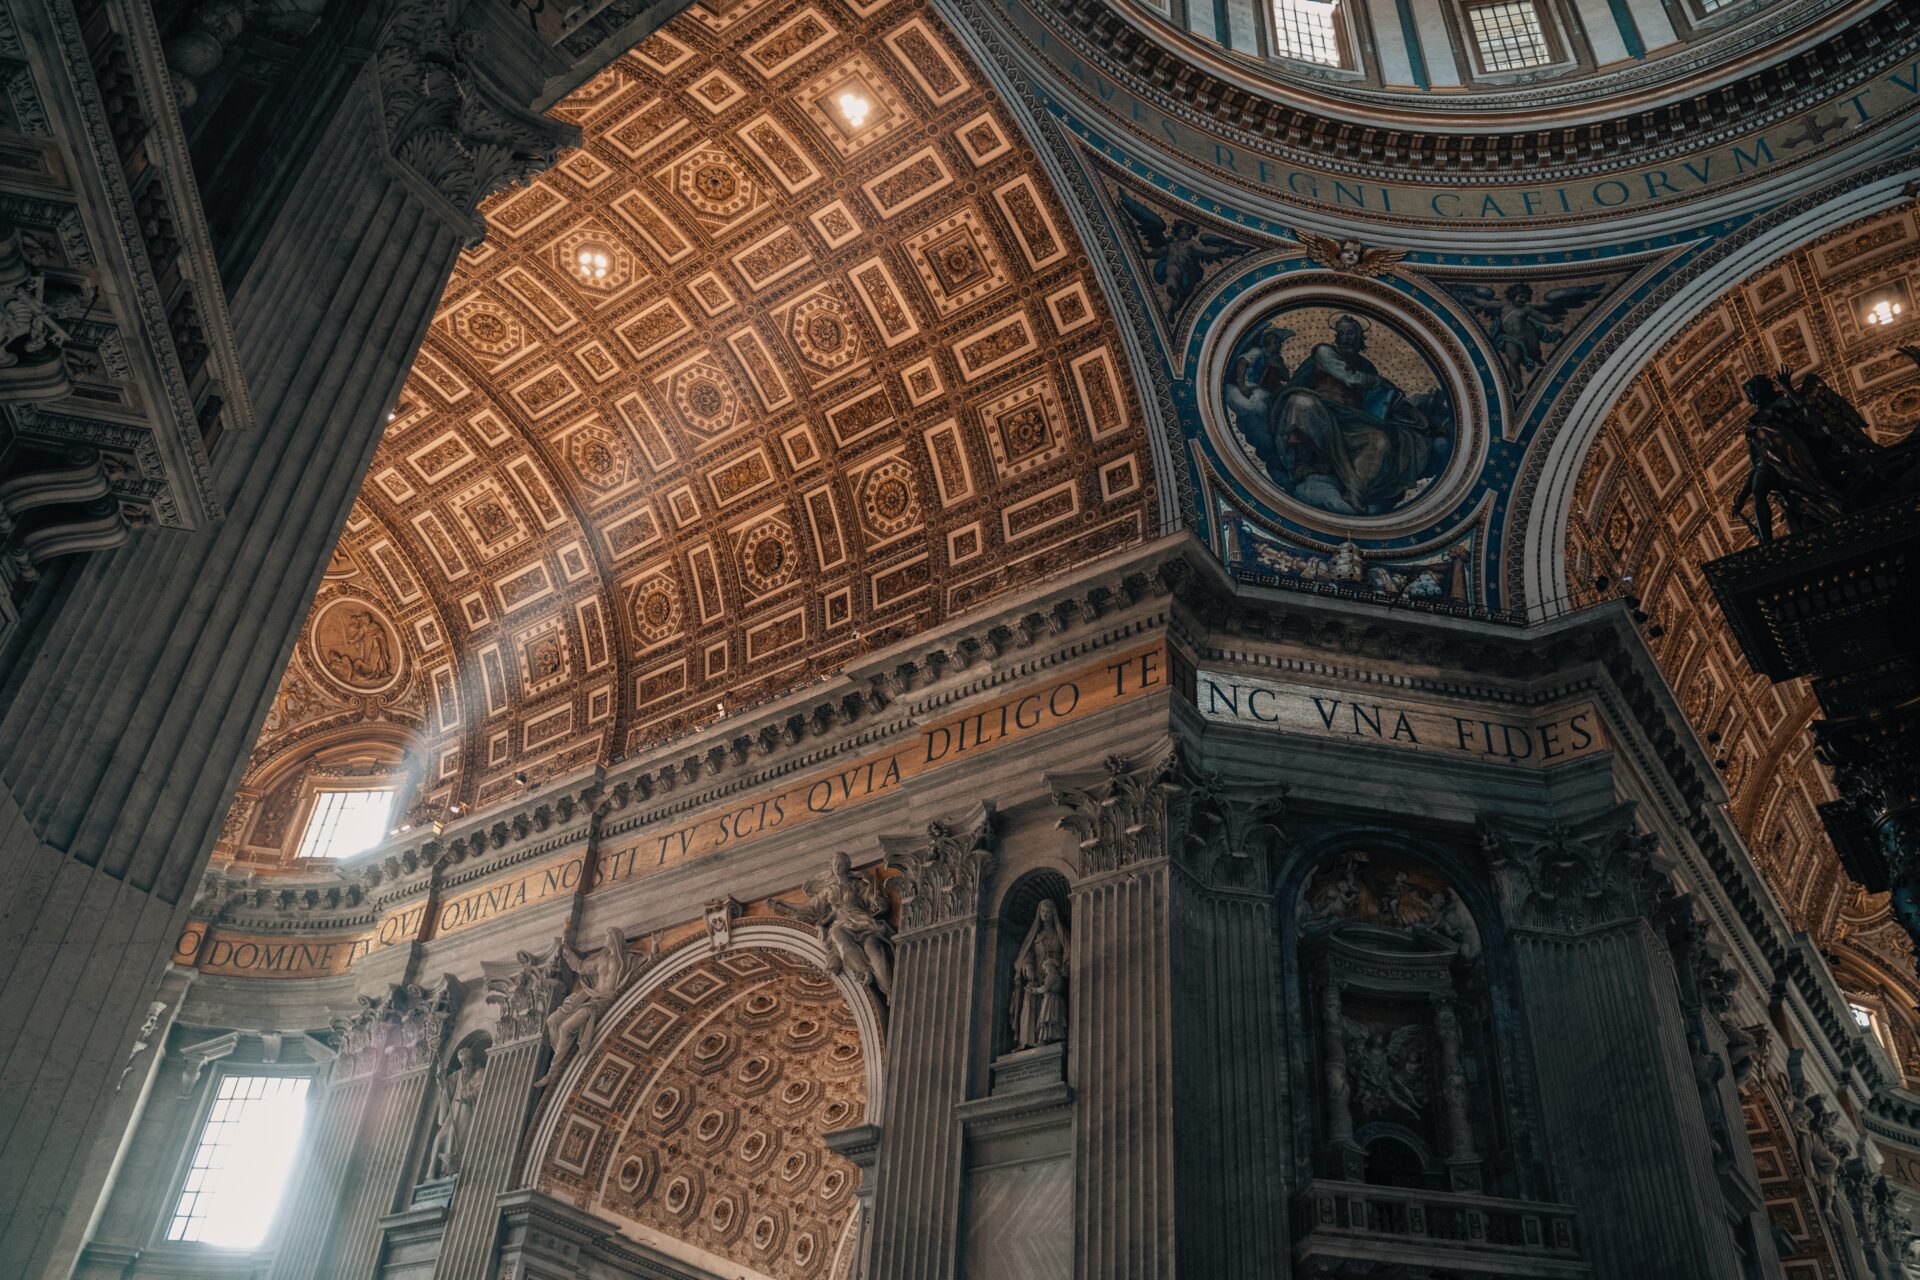 Rom in 2 Tagen: Petersdom